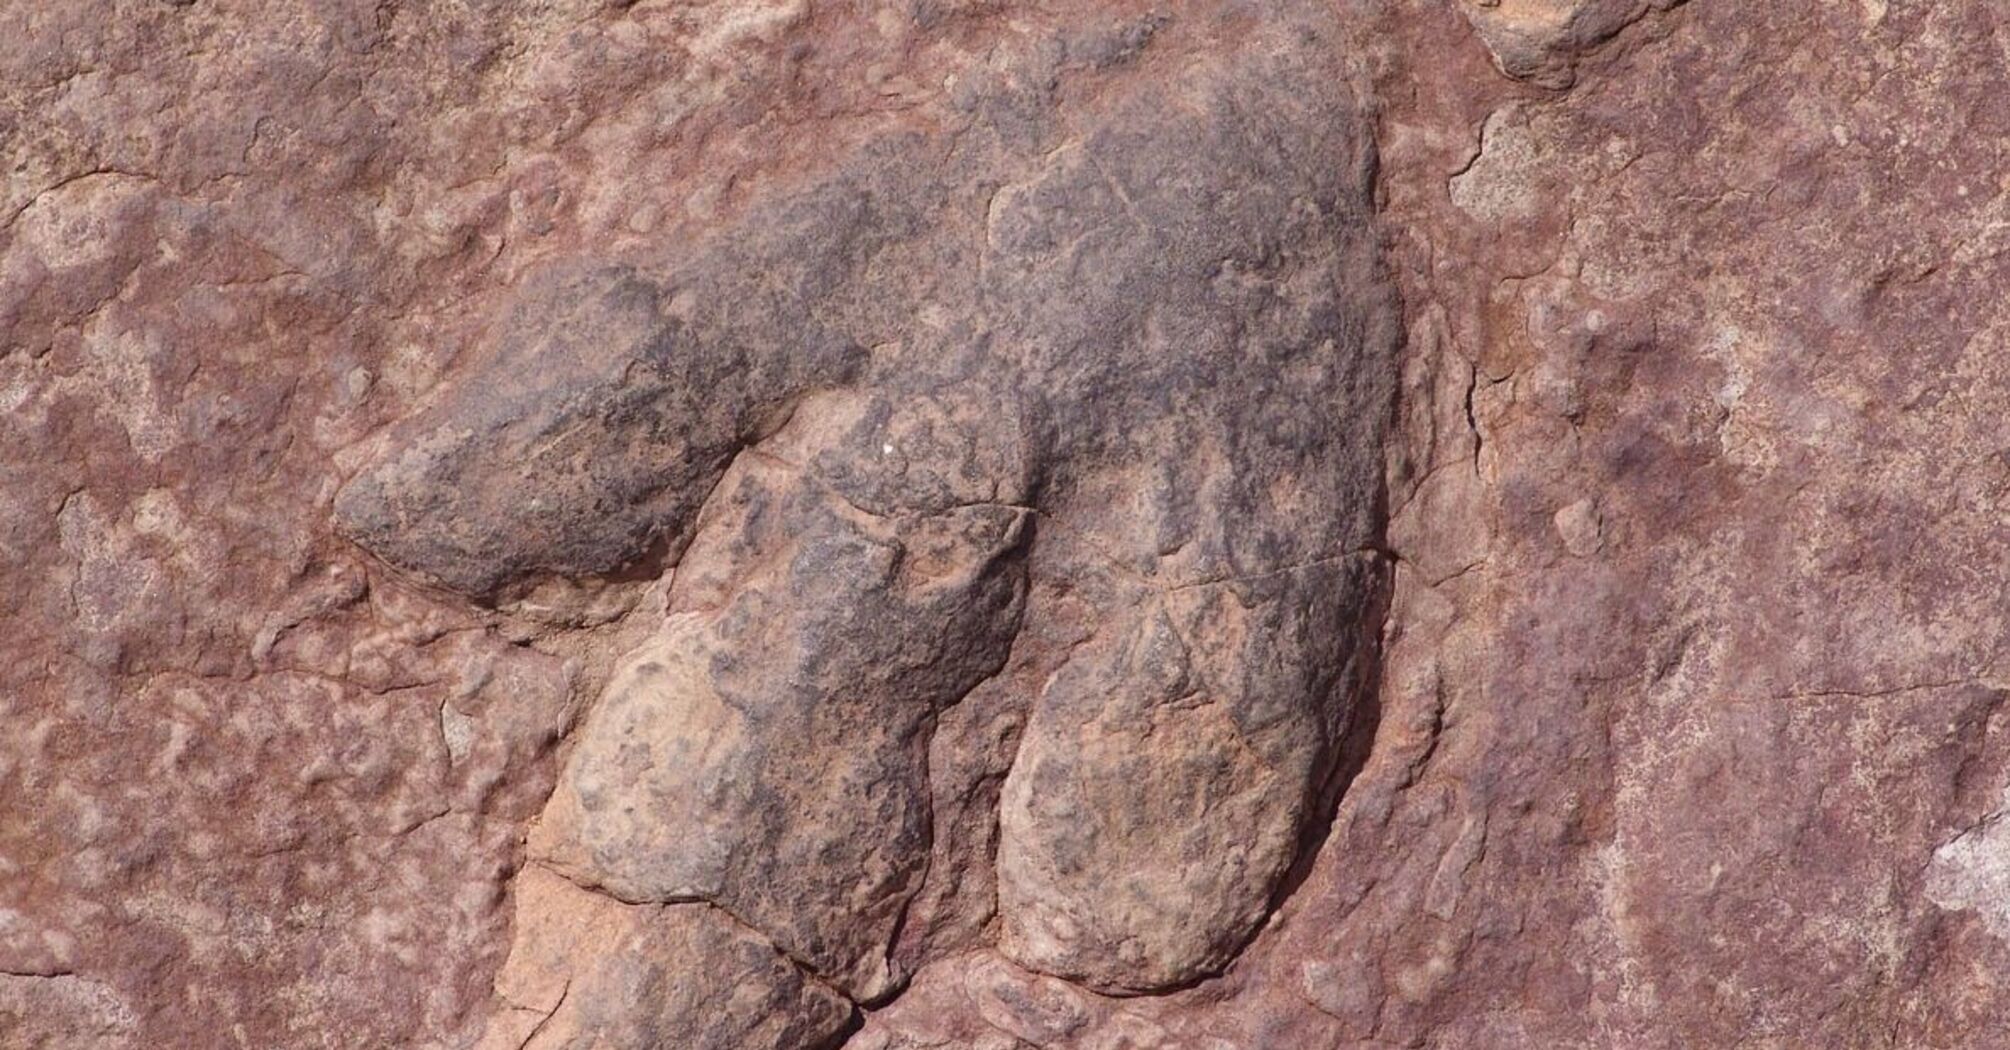 На пляже в Великобритании найдены доисторические следы динозавра